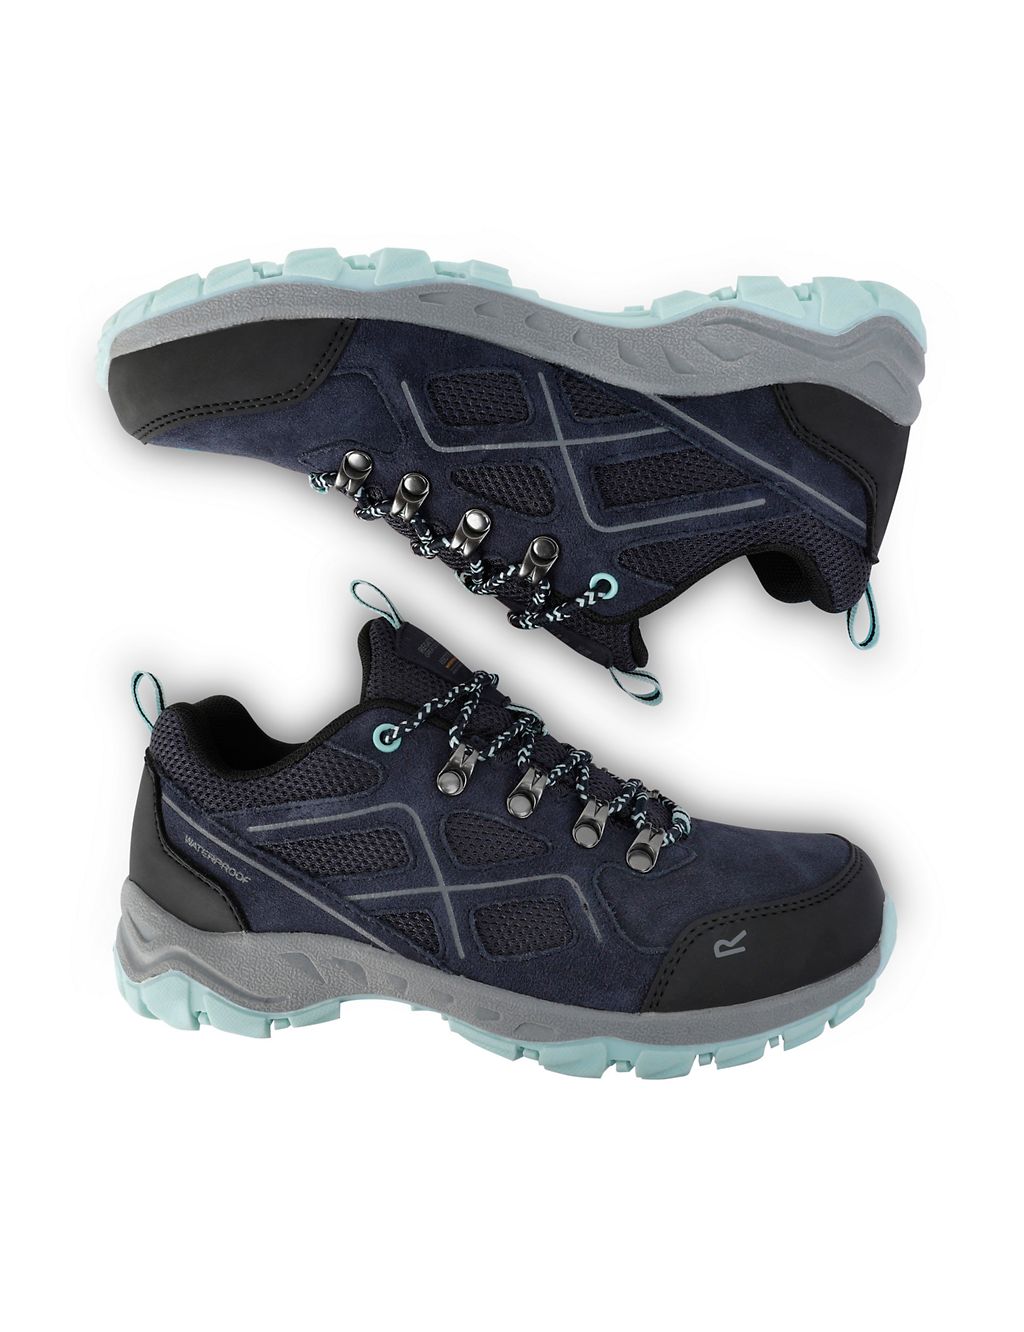 Vendeavour Suede Waterproof Walking Shoes 7 of 9